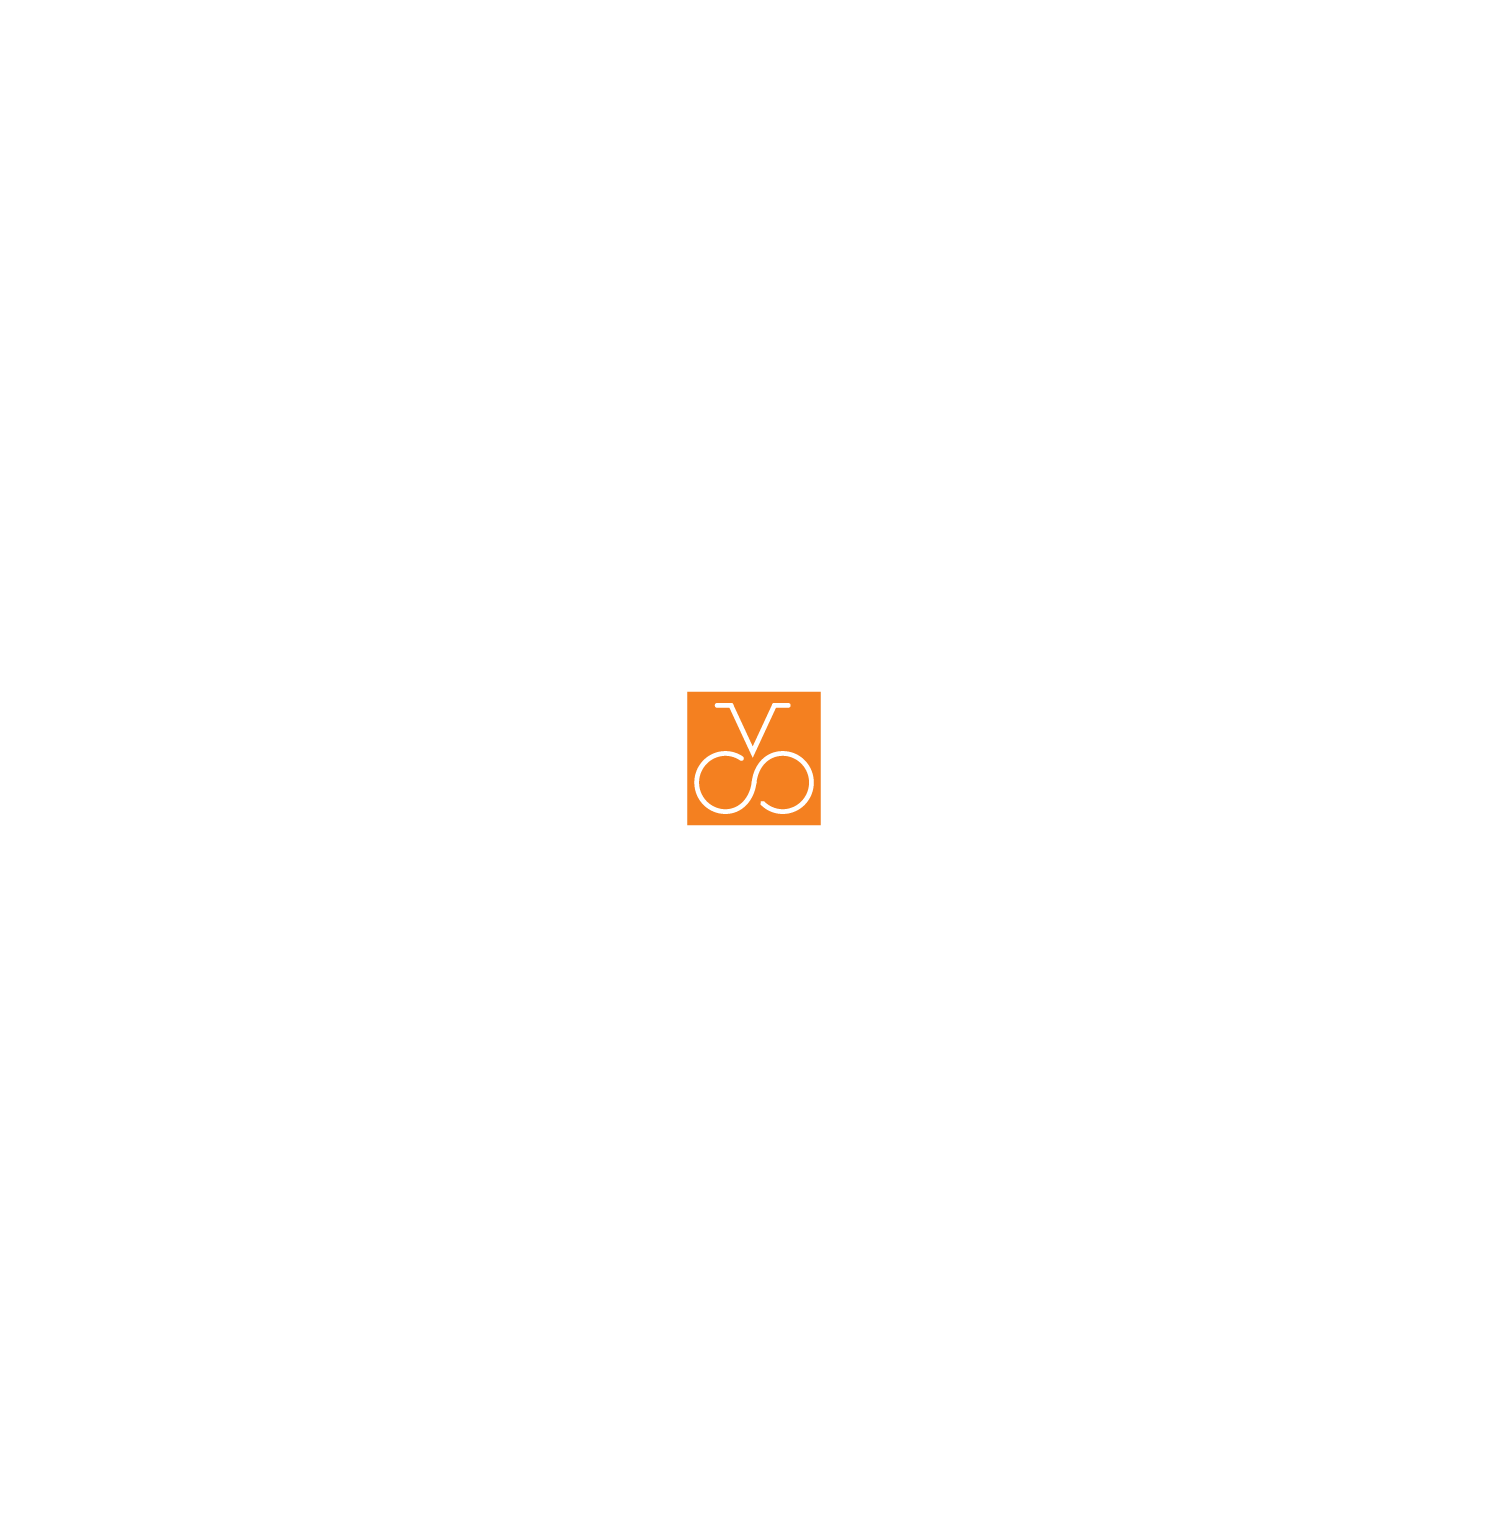 Spoke & Vessel logo for website navigation